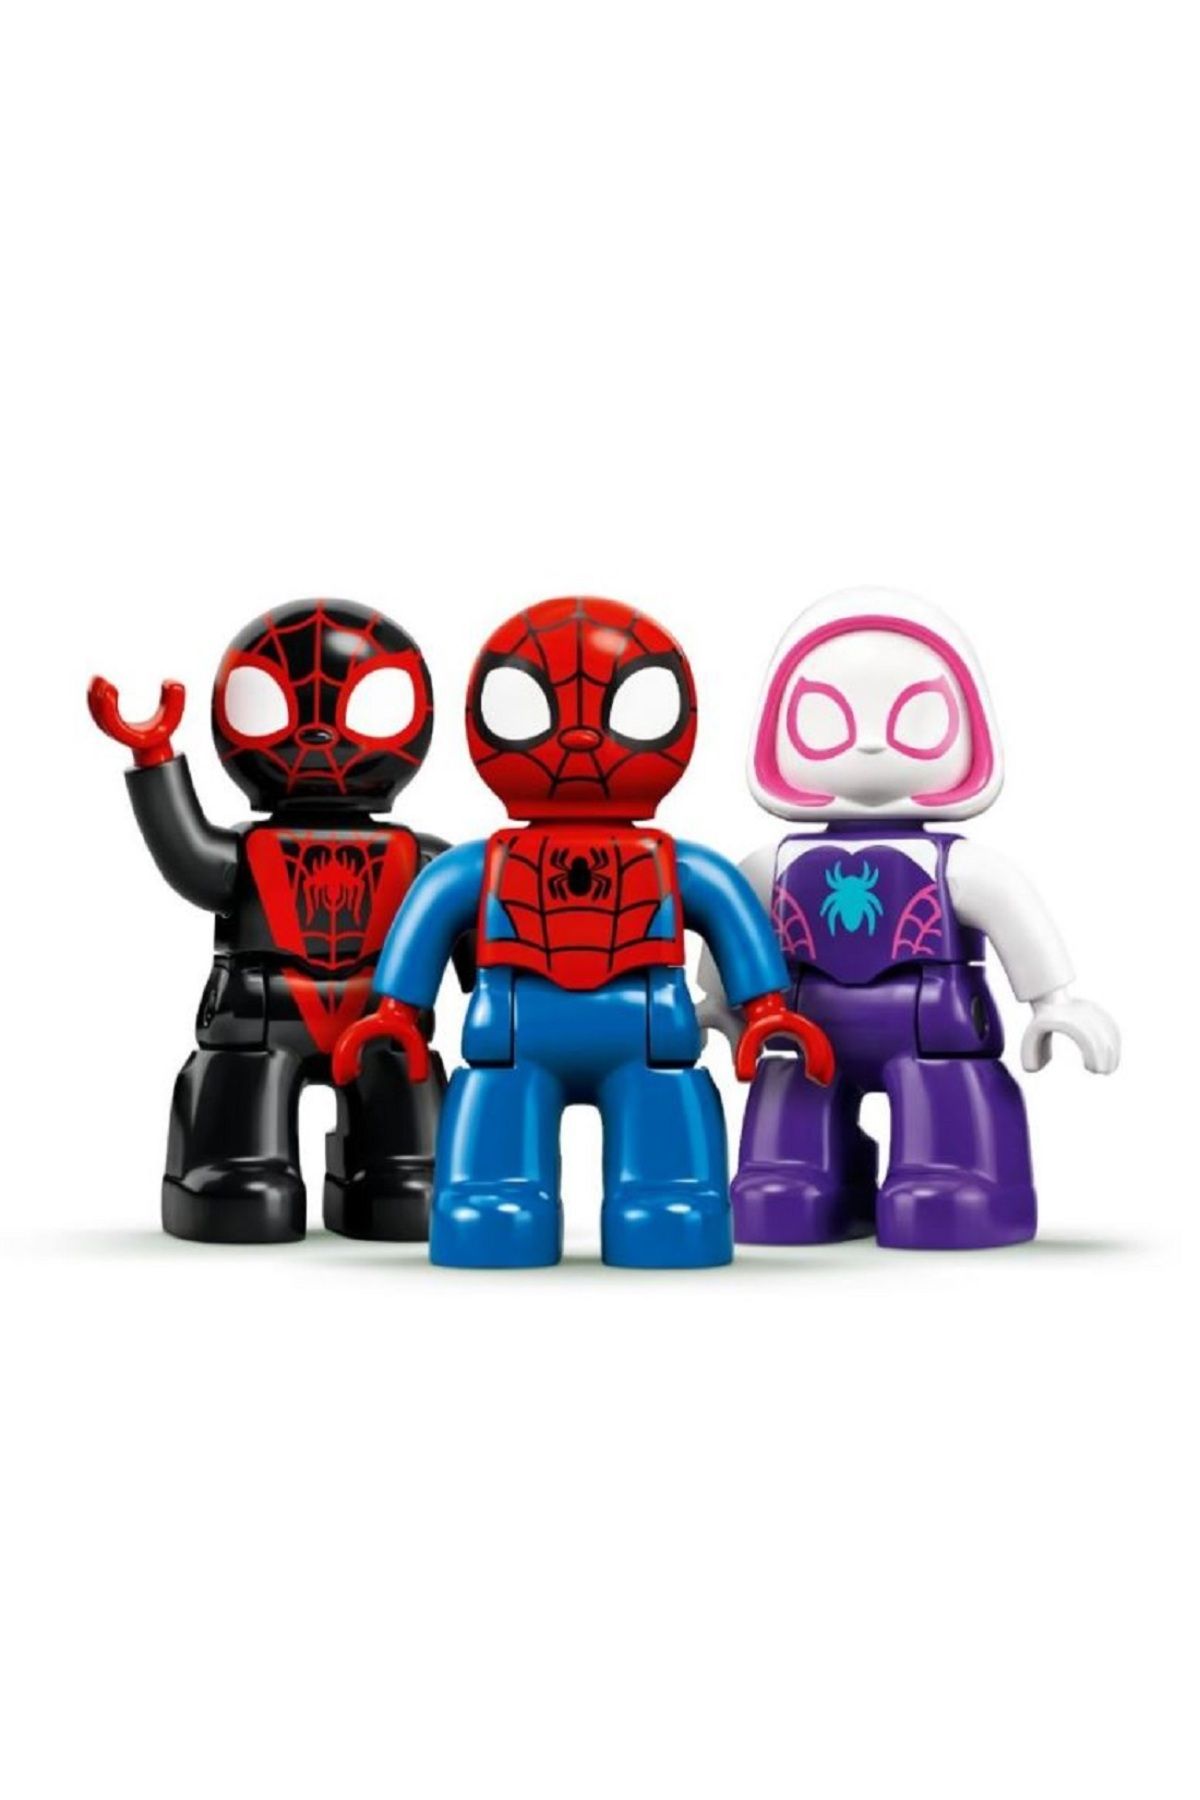 ست 10940 با 36 قطعه Duplo Marvel Spider-Man Special Edition LEGO لگو